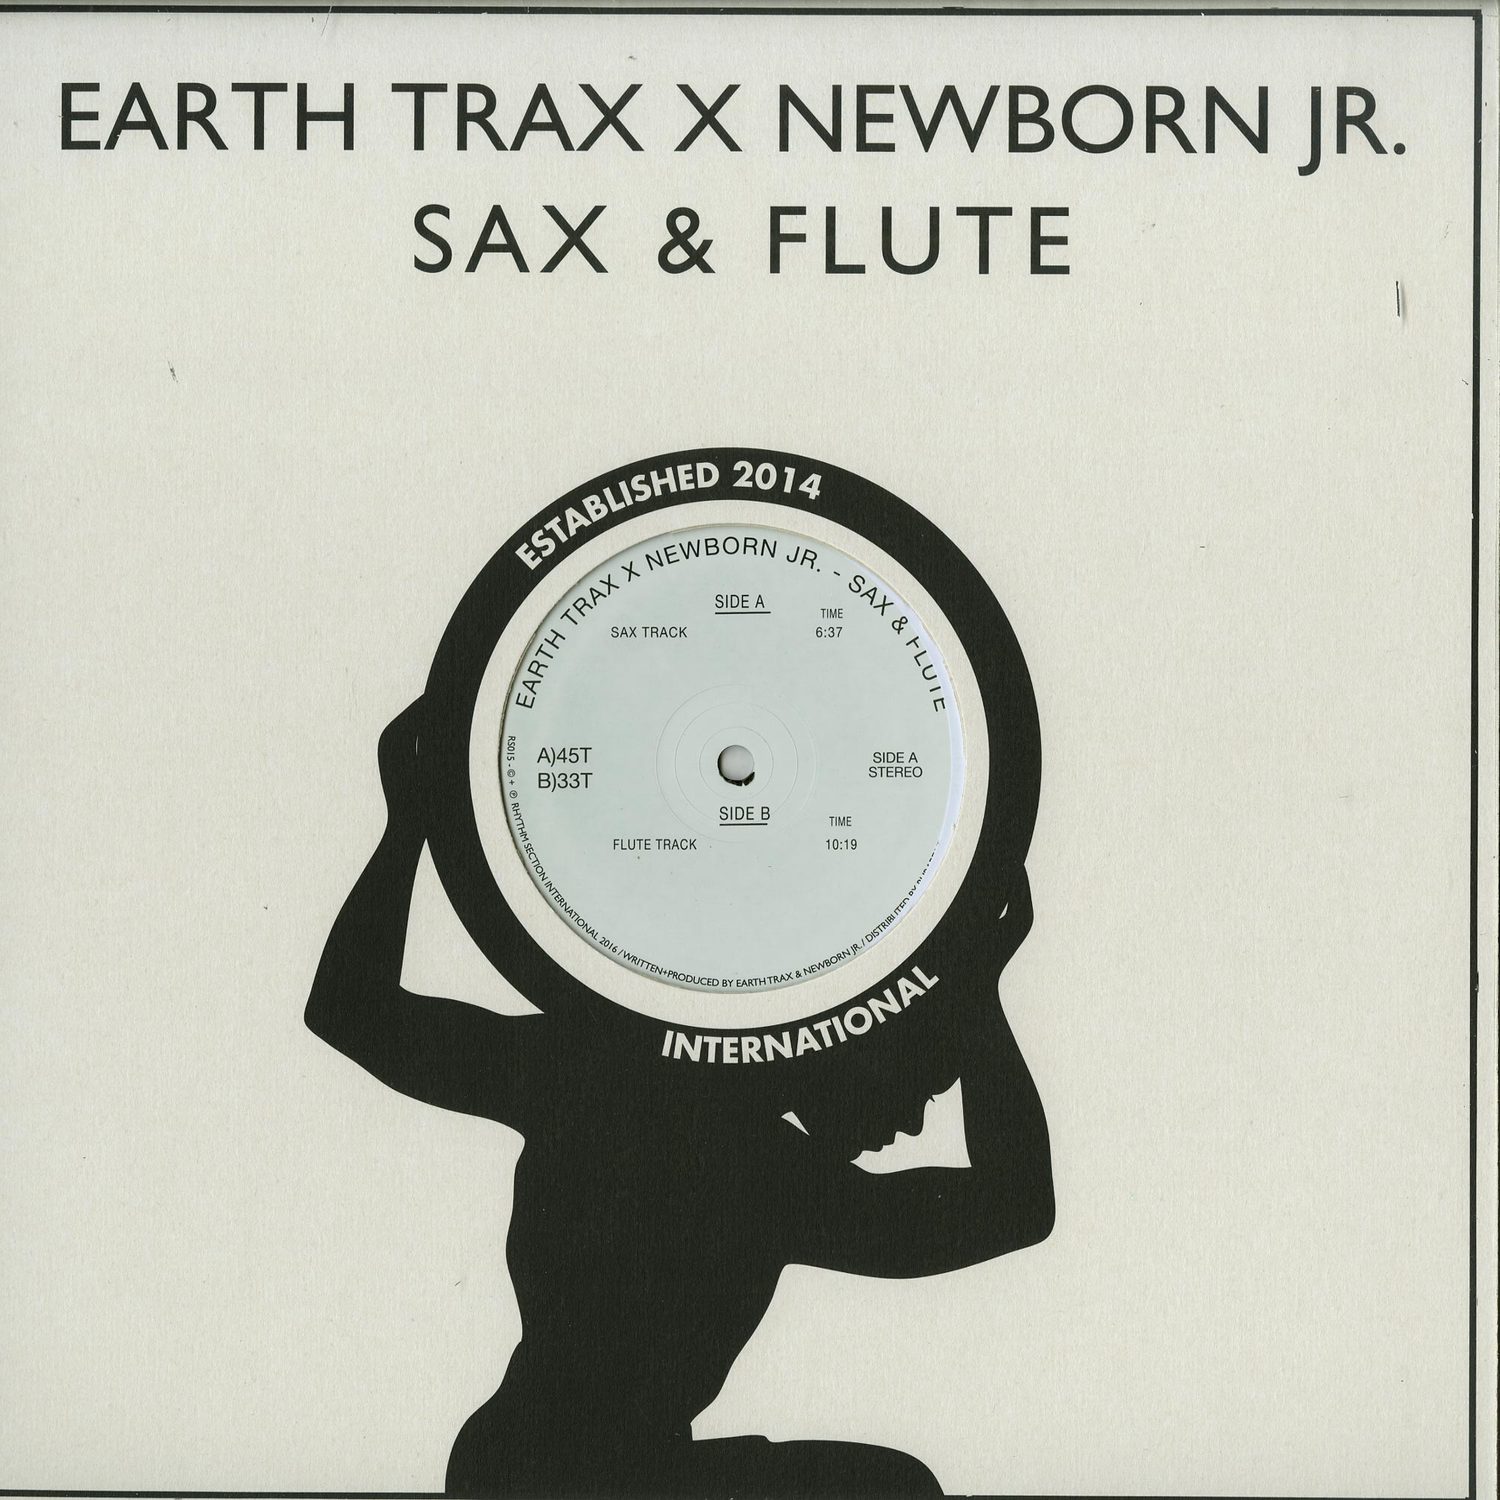 Earth Trax X Newborn Jr. - SAX & FLUTE